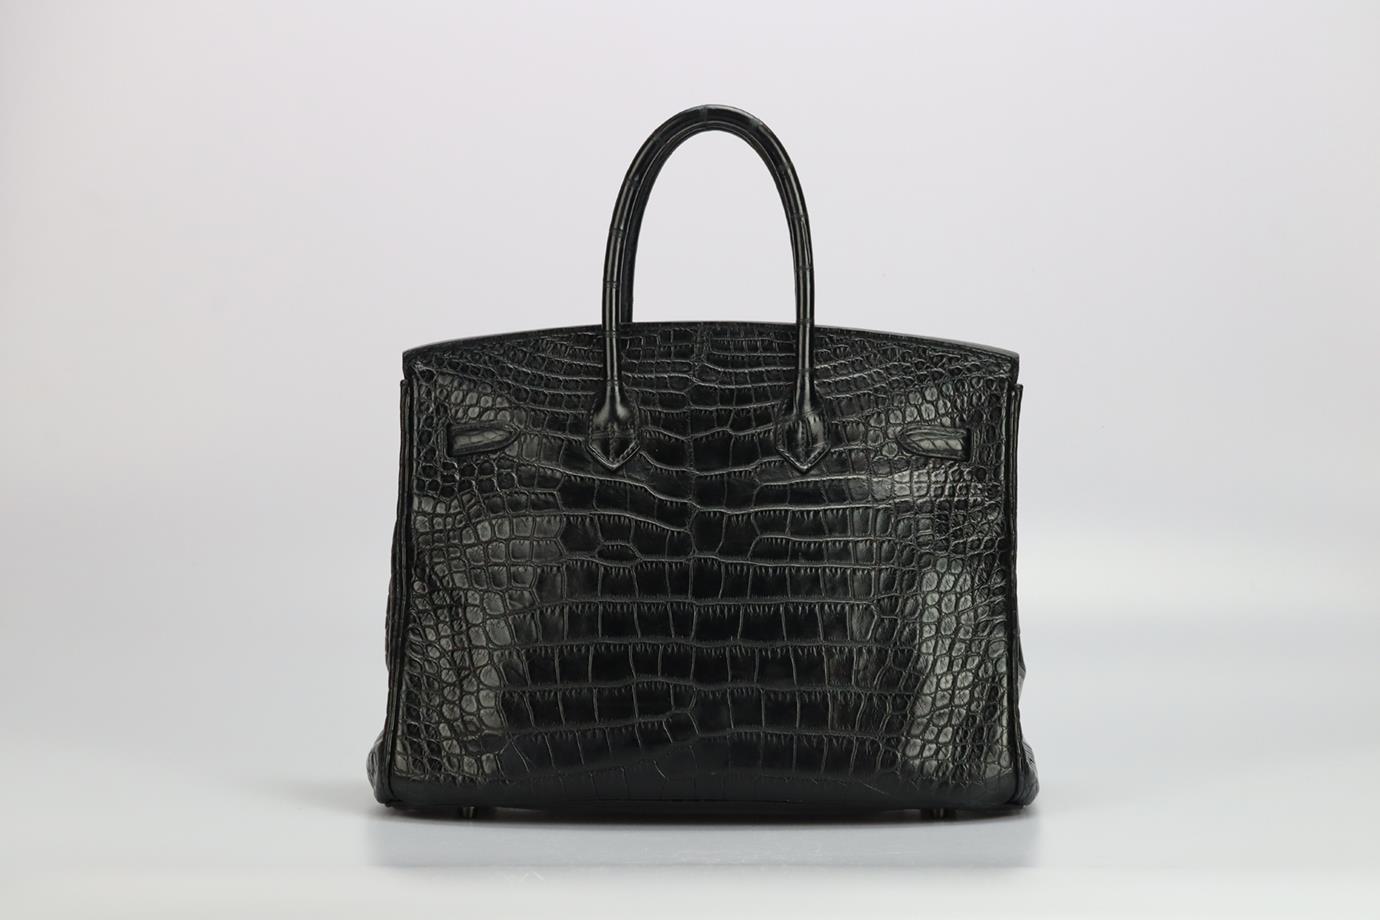 Hermès 2010 Birkin 35cm So Black Matte Alligator Bag For Sale 2